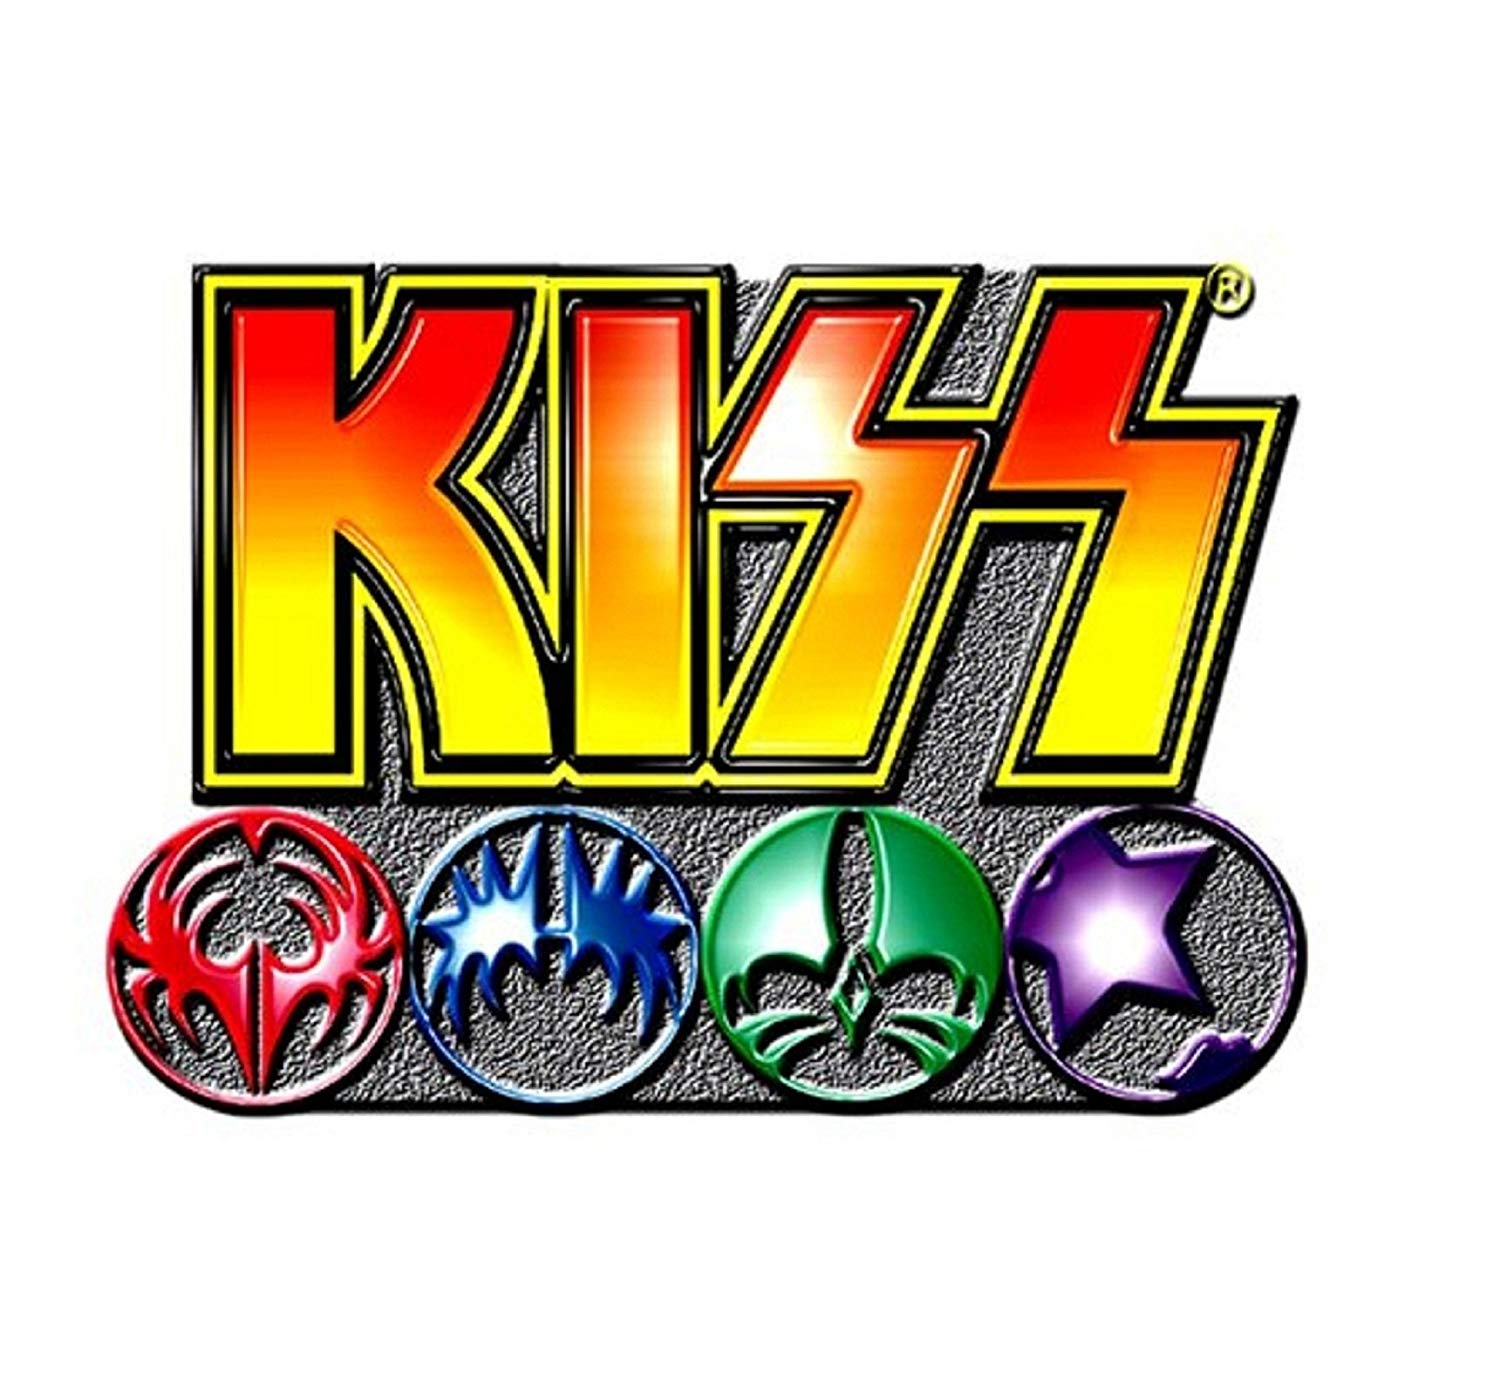 Kiss Band Logo - Amazon.com: Kiss Pin Badge Band Logo And Icons Official Metal Lapel ...